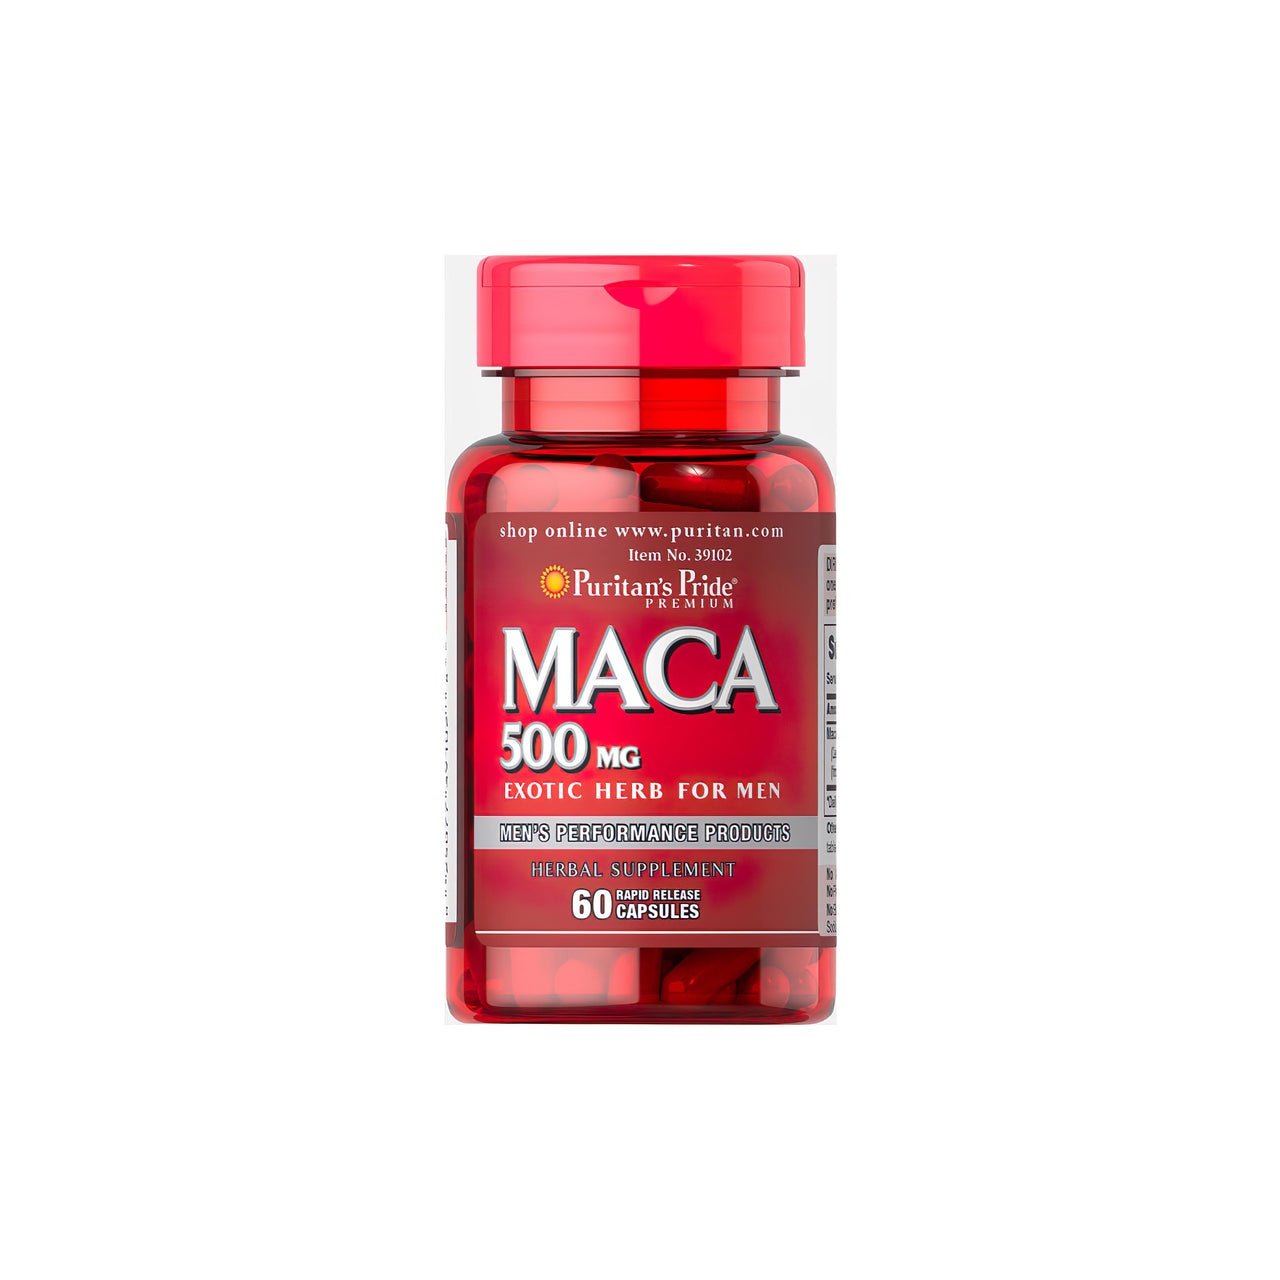 Eine Flasche Puritan's Pride Maca 500 mg 60 Schnelllösekapseln.